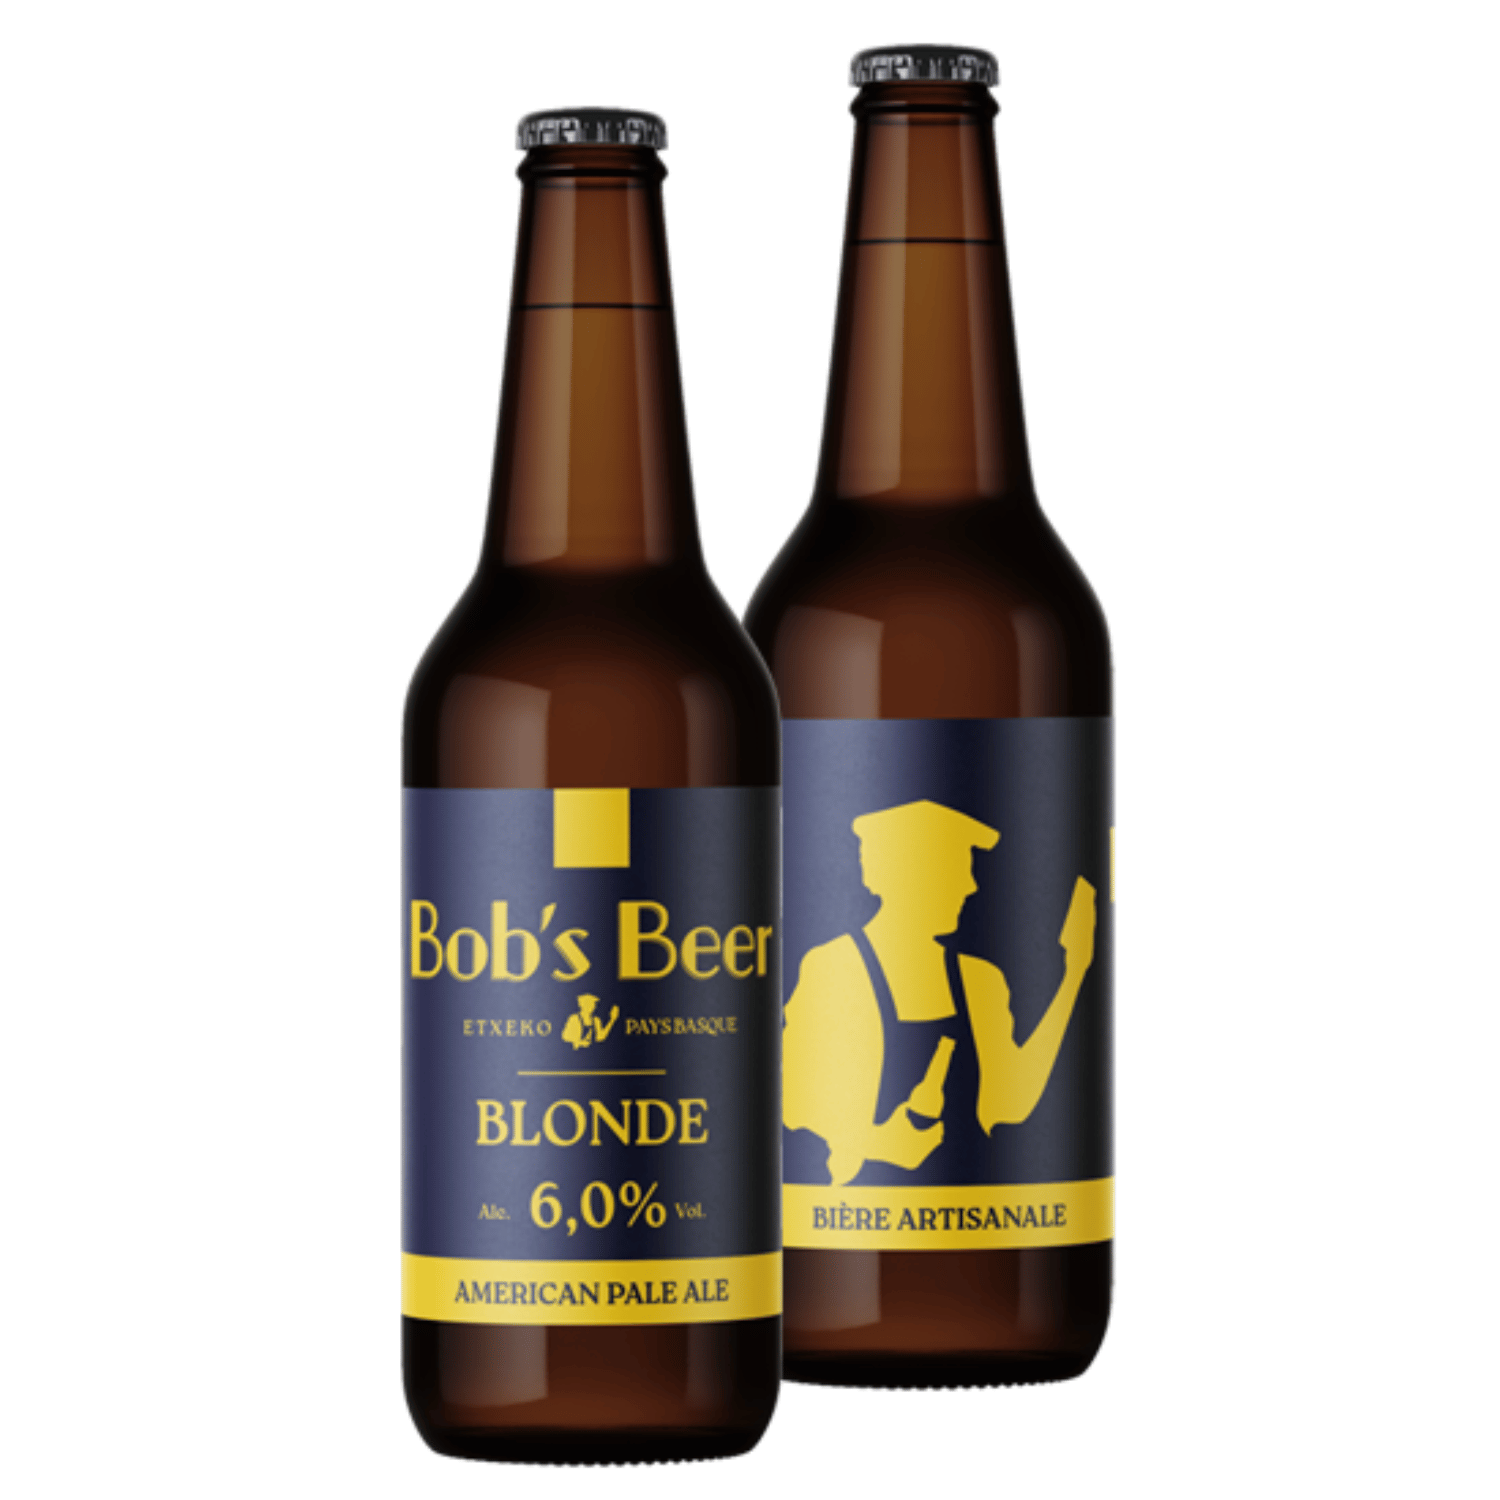 Bière blonde du Pays Baqsue Bob's Beer